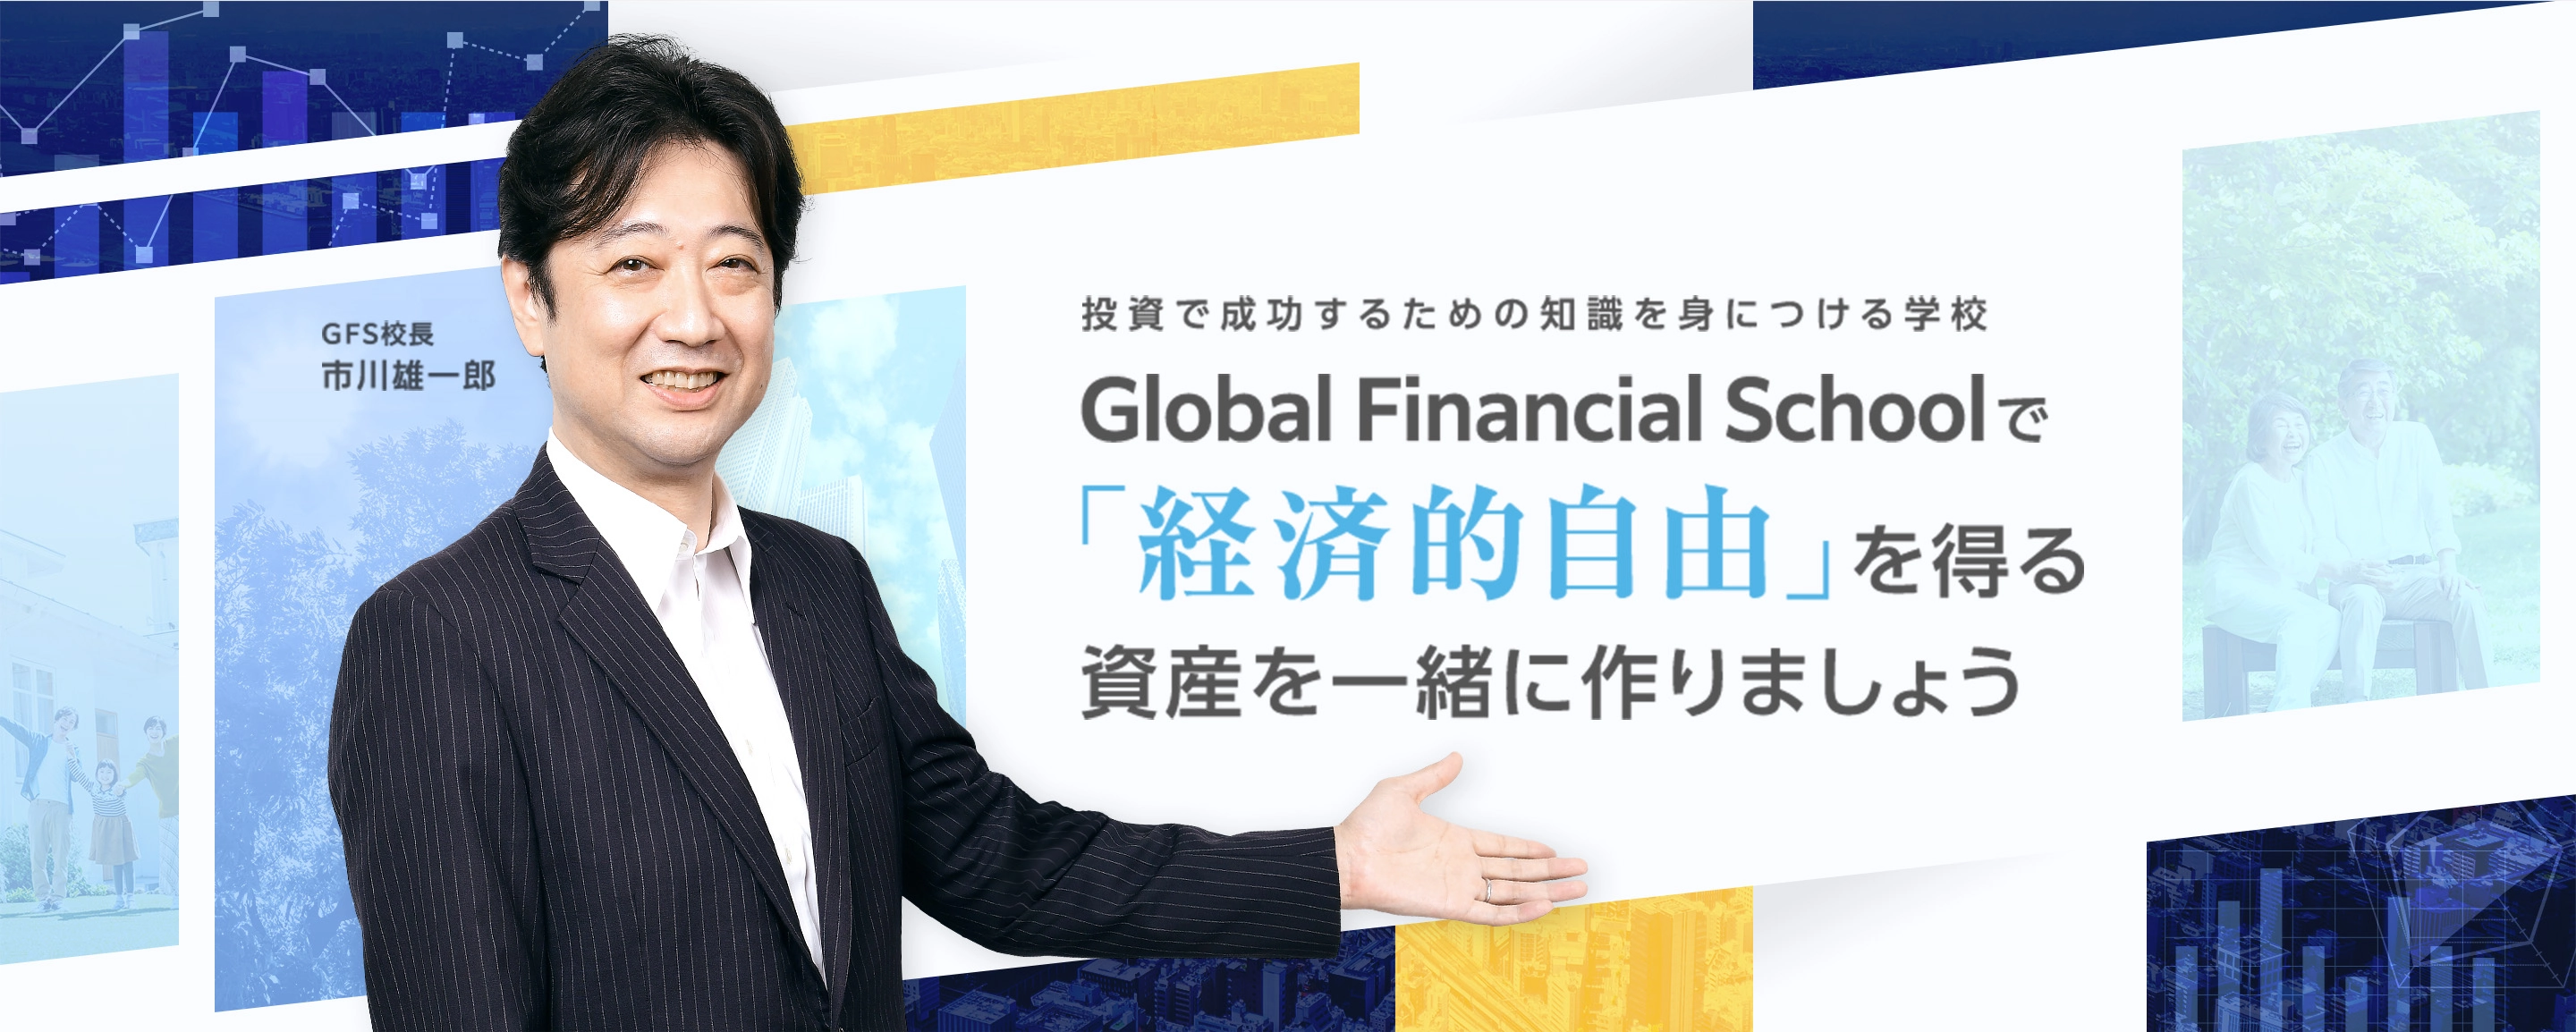 投資で成功するための知識を身につける学校 Global Financial Schoolで「経済的自由」を得る資産を一緒に作りましょう GFS校長 市川雄一郎